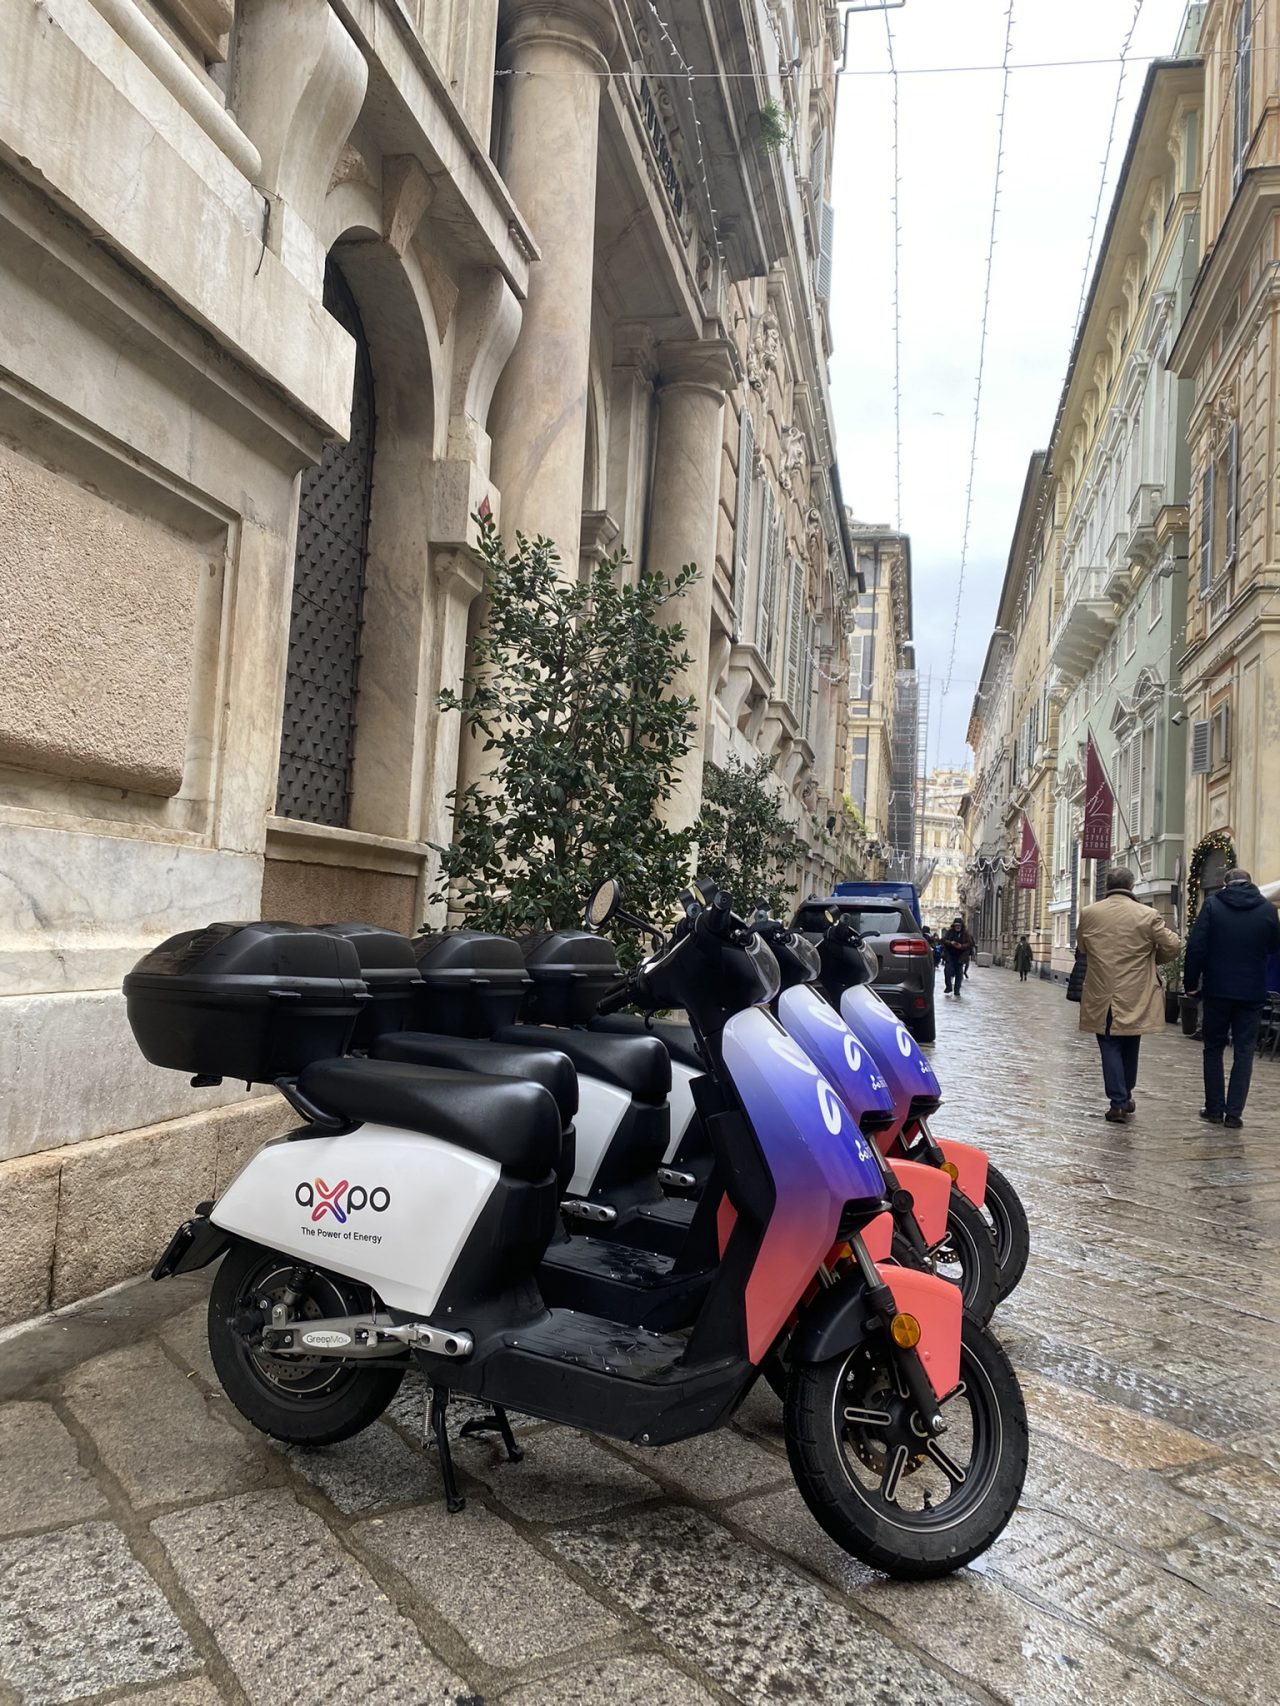 Axpo Italy e-scooter sharing